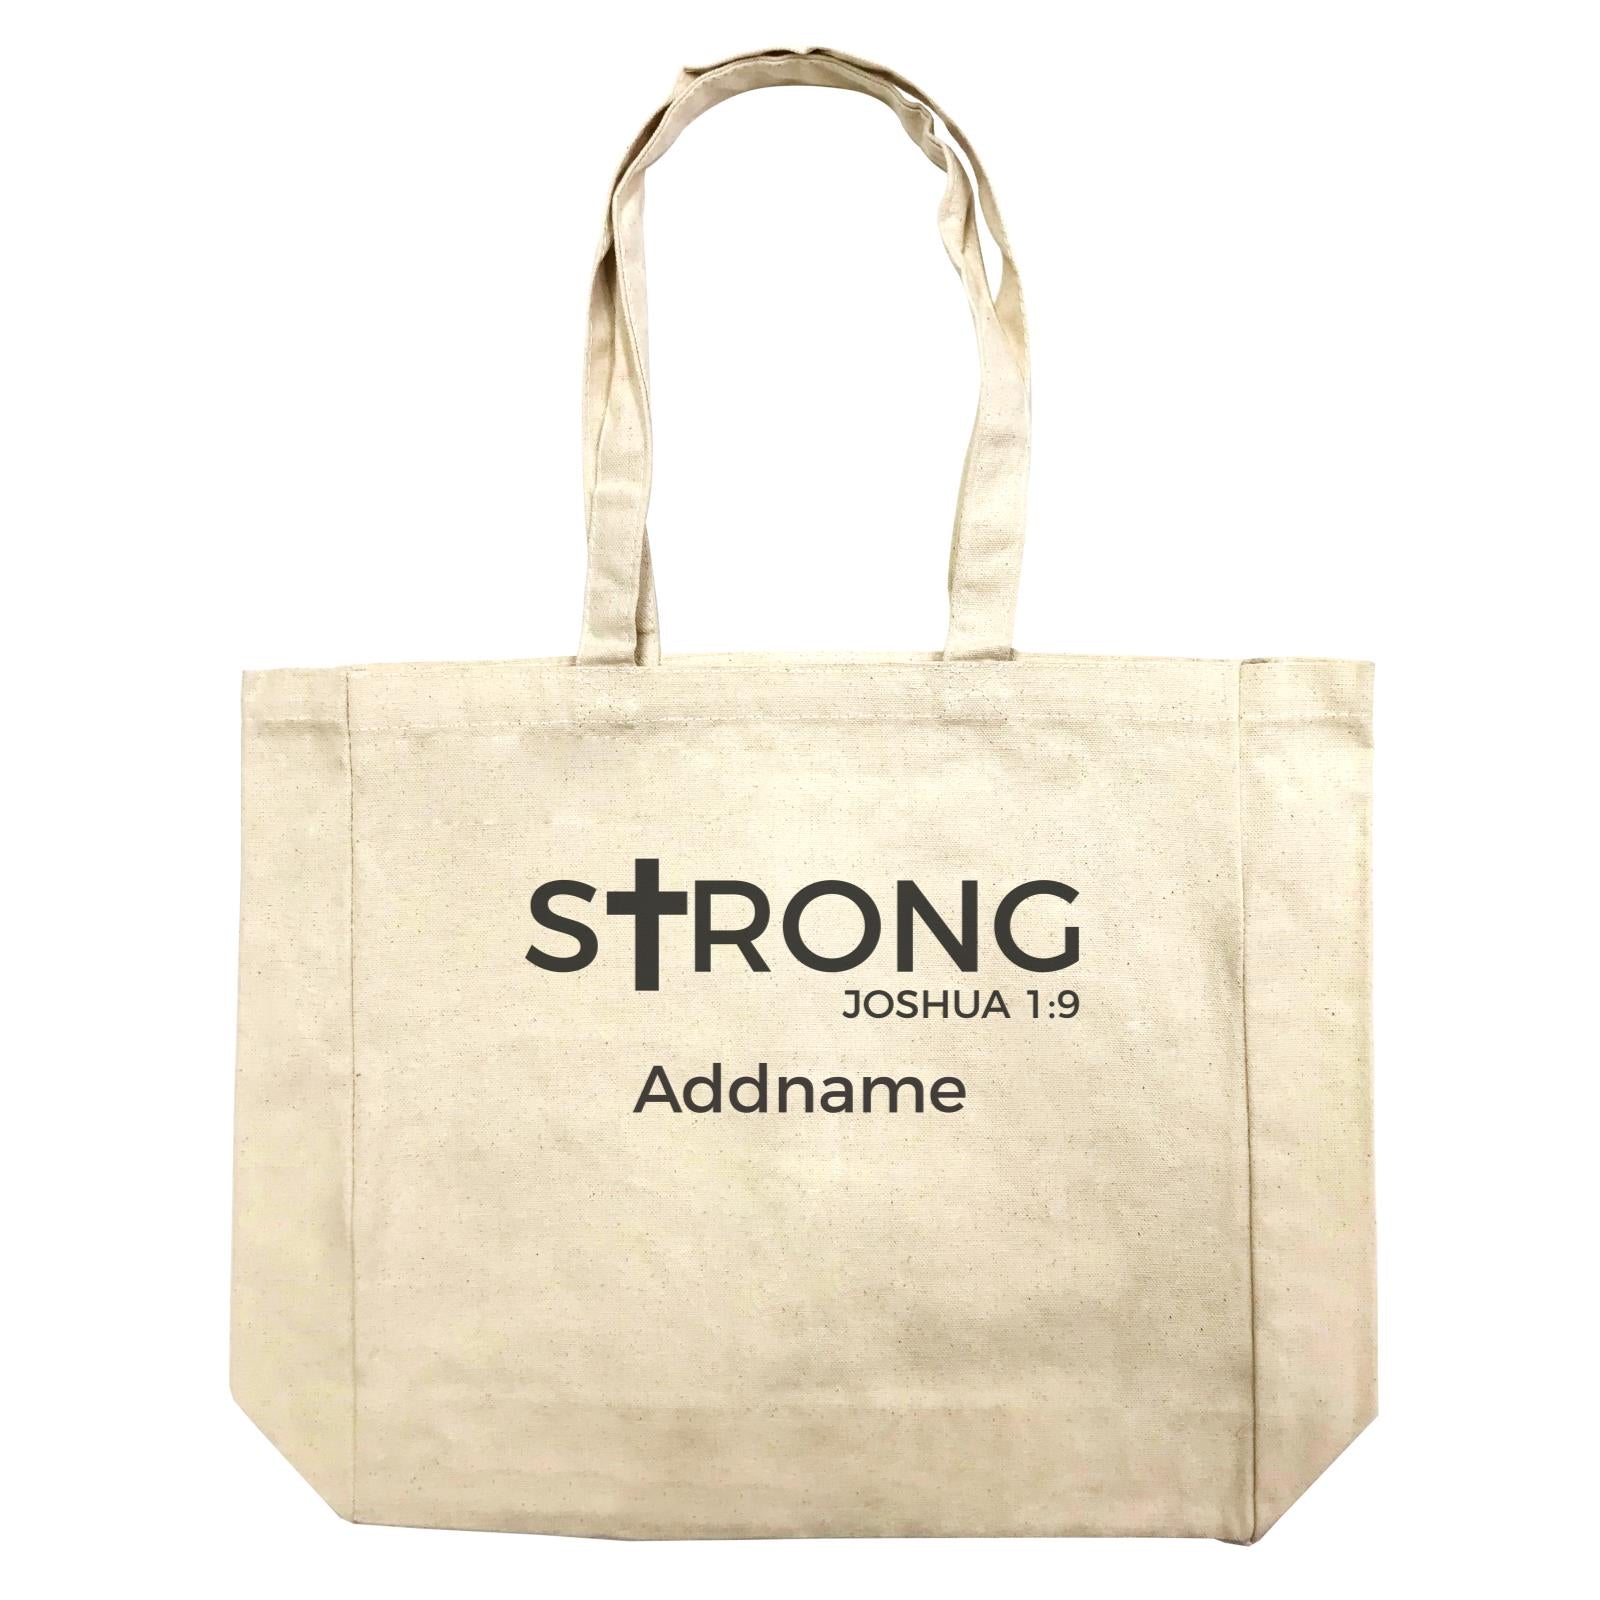 Christian Series Strong Joshua 1.9 Addname Shopping Bag